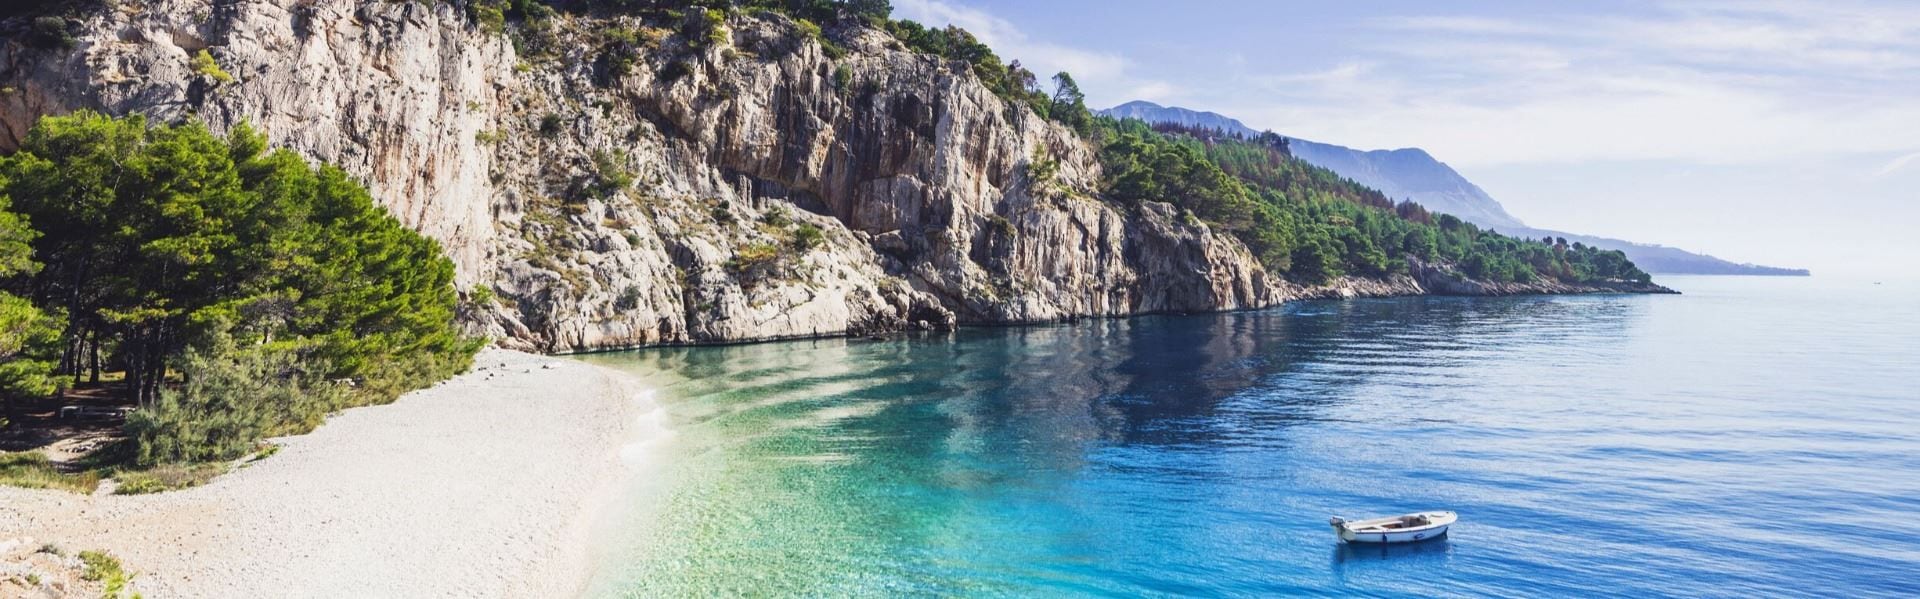 La playa de Nugal, además del nudismo, es conocida por sus piedras blancas que sustituyen la clásica arena de las playas (croatia.hr)